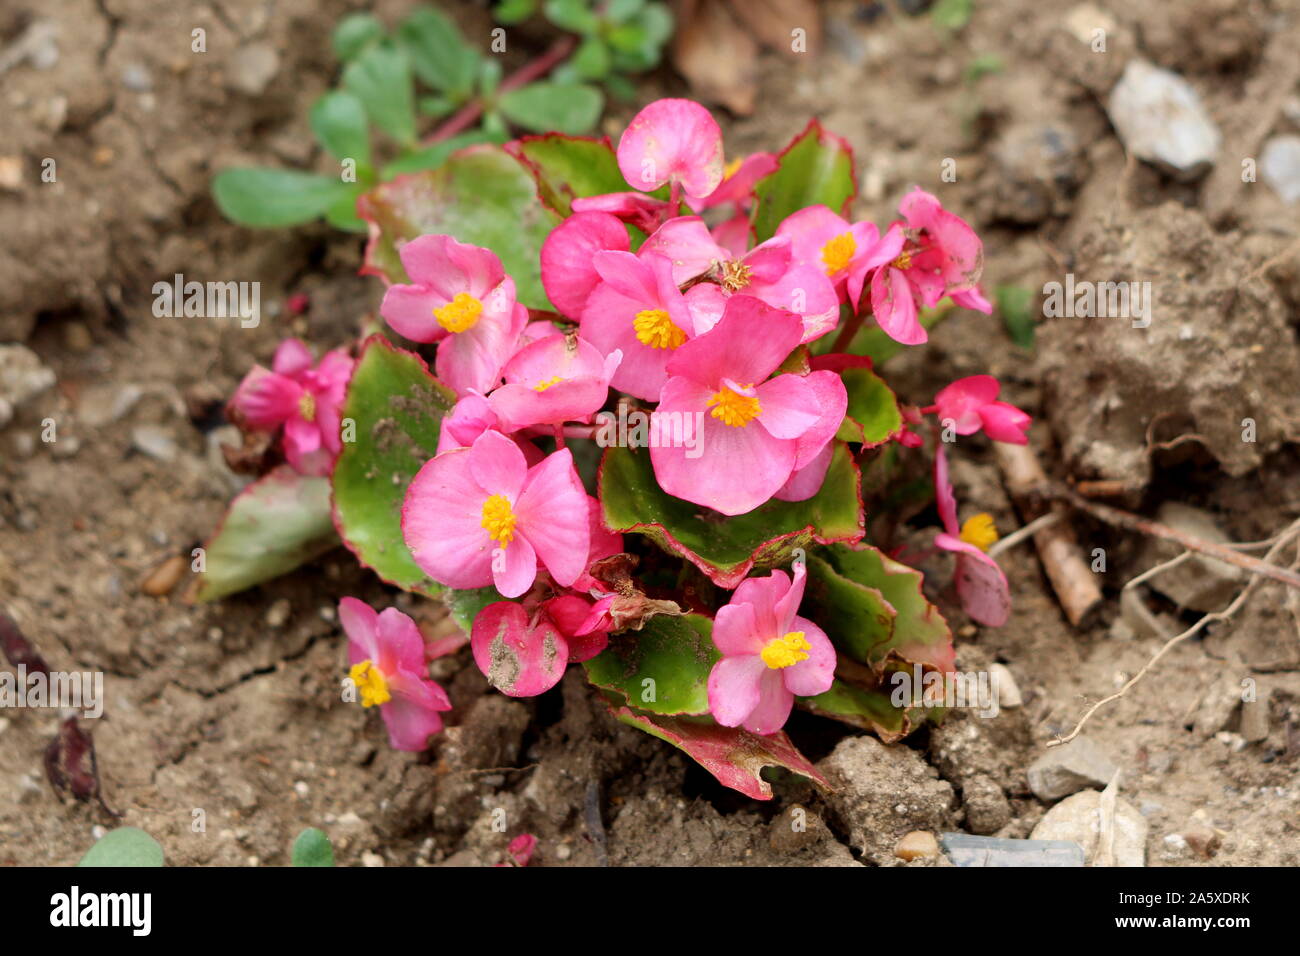 Begonia plantas que crecen en forma de pequeño arbusto con flores de color  rosa y amarillo central rodeada con hojas de luz verde y suelo seco  Fotografía de stock - Alamy